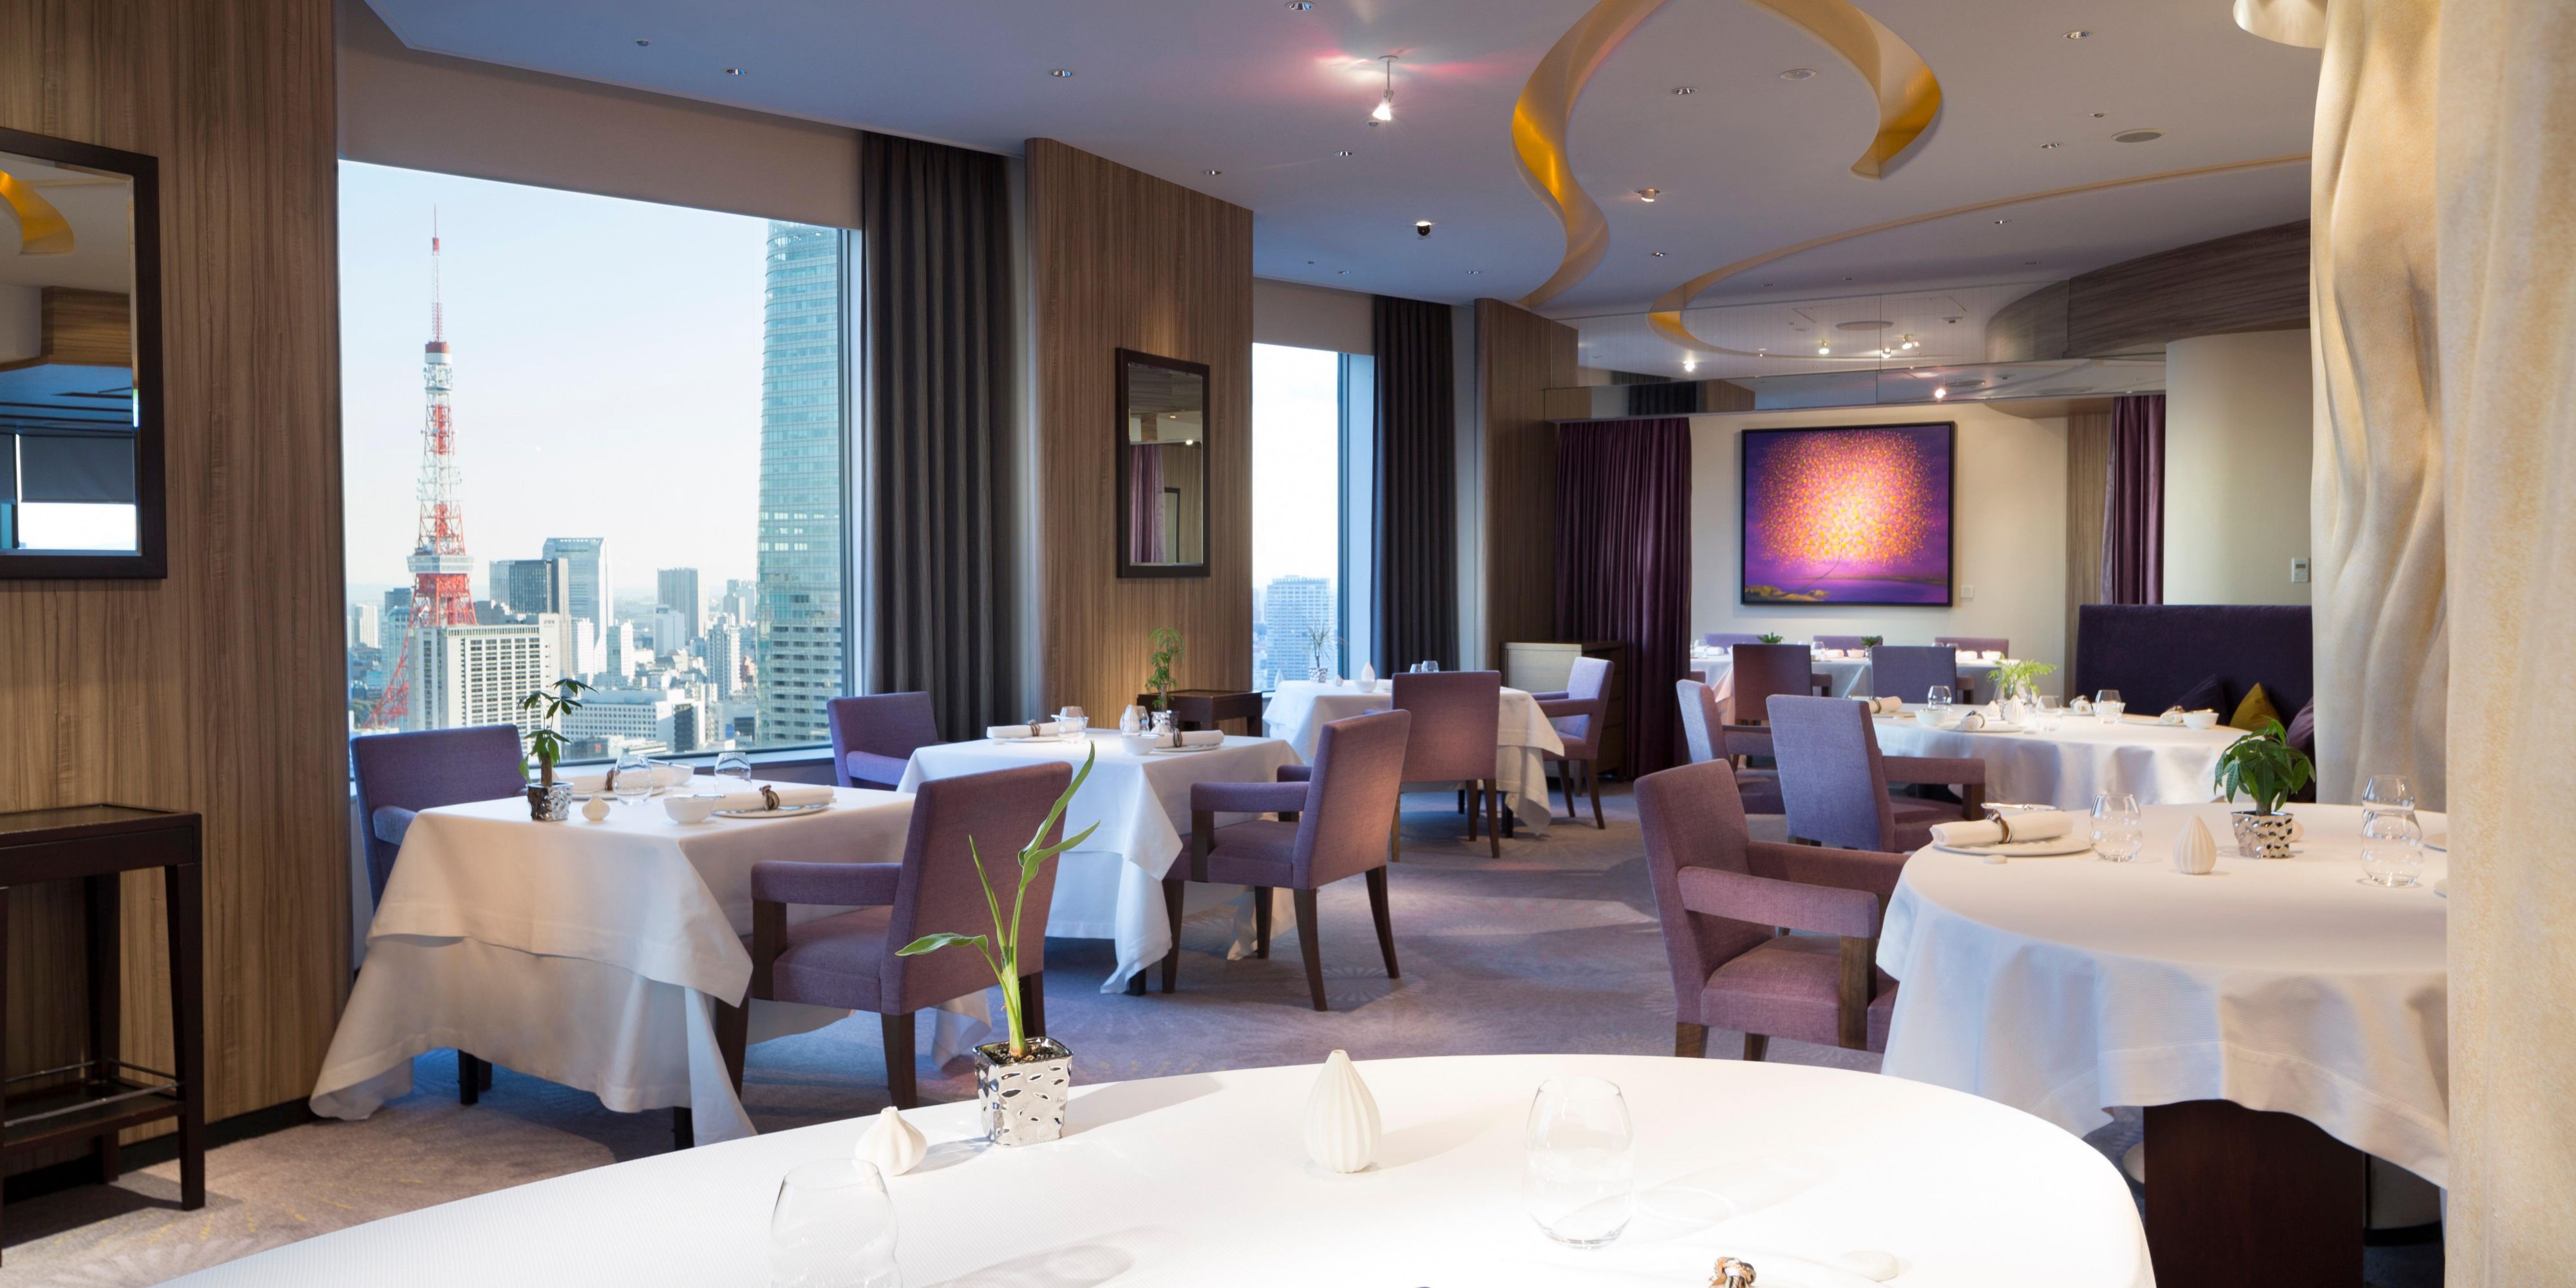 ANAインターコンチネンタルホテル東京36階「ピエール・ガニェール」は、ミシュランの3つ星シェフとして名高い美食の巨匠、ピエール・ガニェール氏がプロデュースする現代風フランス料理のレストランで、世界で展開する同氏のレストランの中でももっとも天空に近い高層階に位置します。

厳選された素材に情熱が注ぎ込まれるガニェール氏の料理は常に驚きに満ち溢れ、きめ細やかなサービス、洗練された空間、息をのむ素晴らしい景観と共に、感動を呼び醒ますような価値ある時間をご提供します。